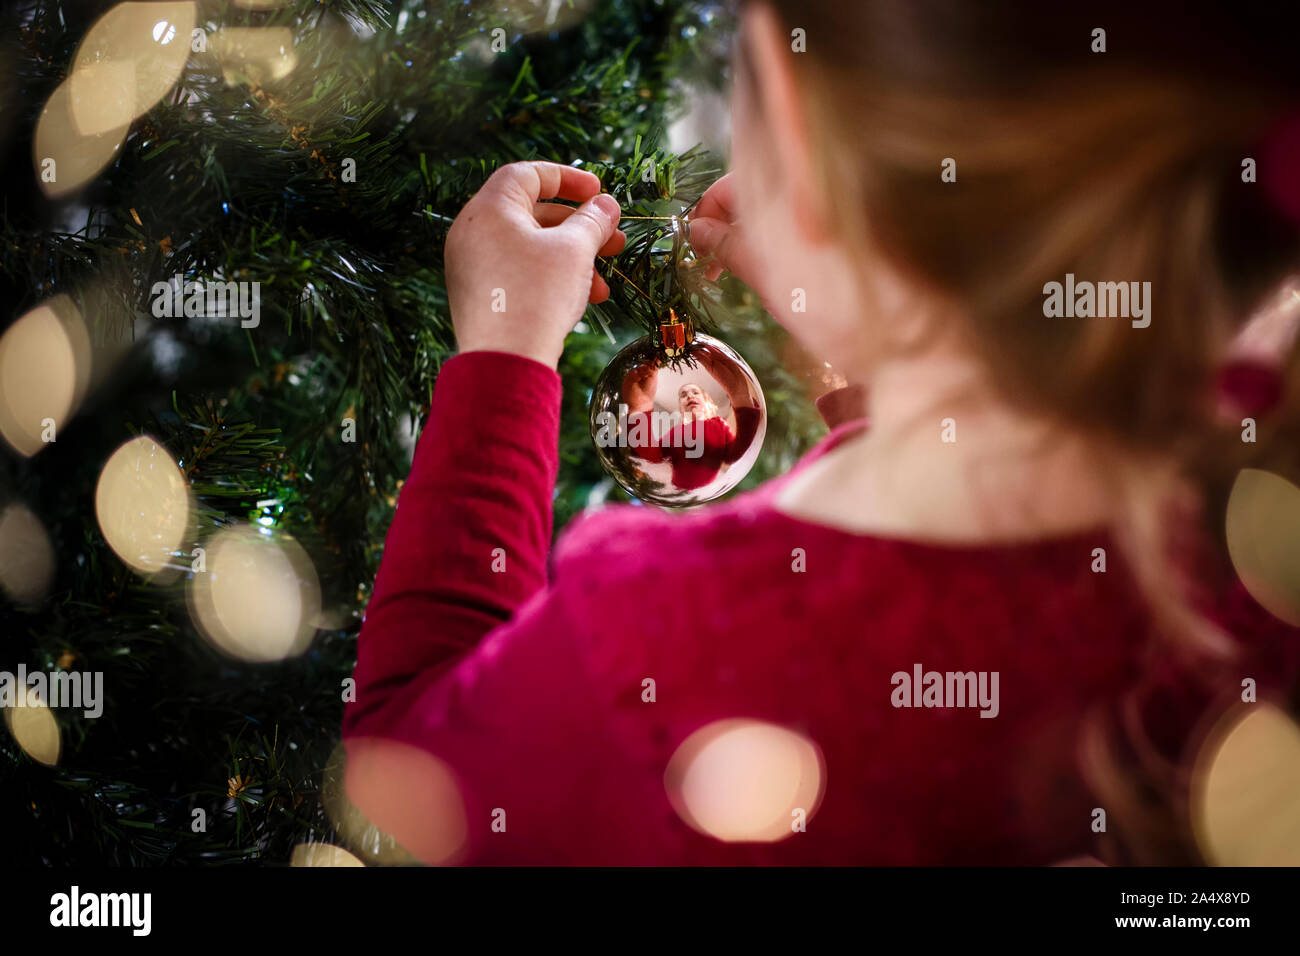 Festliche Bild von Mädchen schmücken Weihnachtsbaum Reflexion in der christbaumkugel Stockfoto